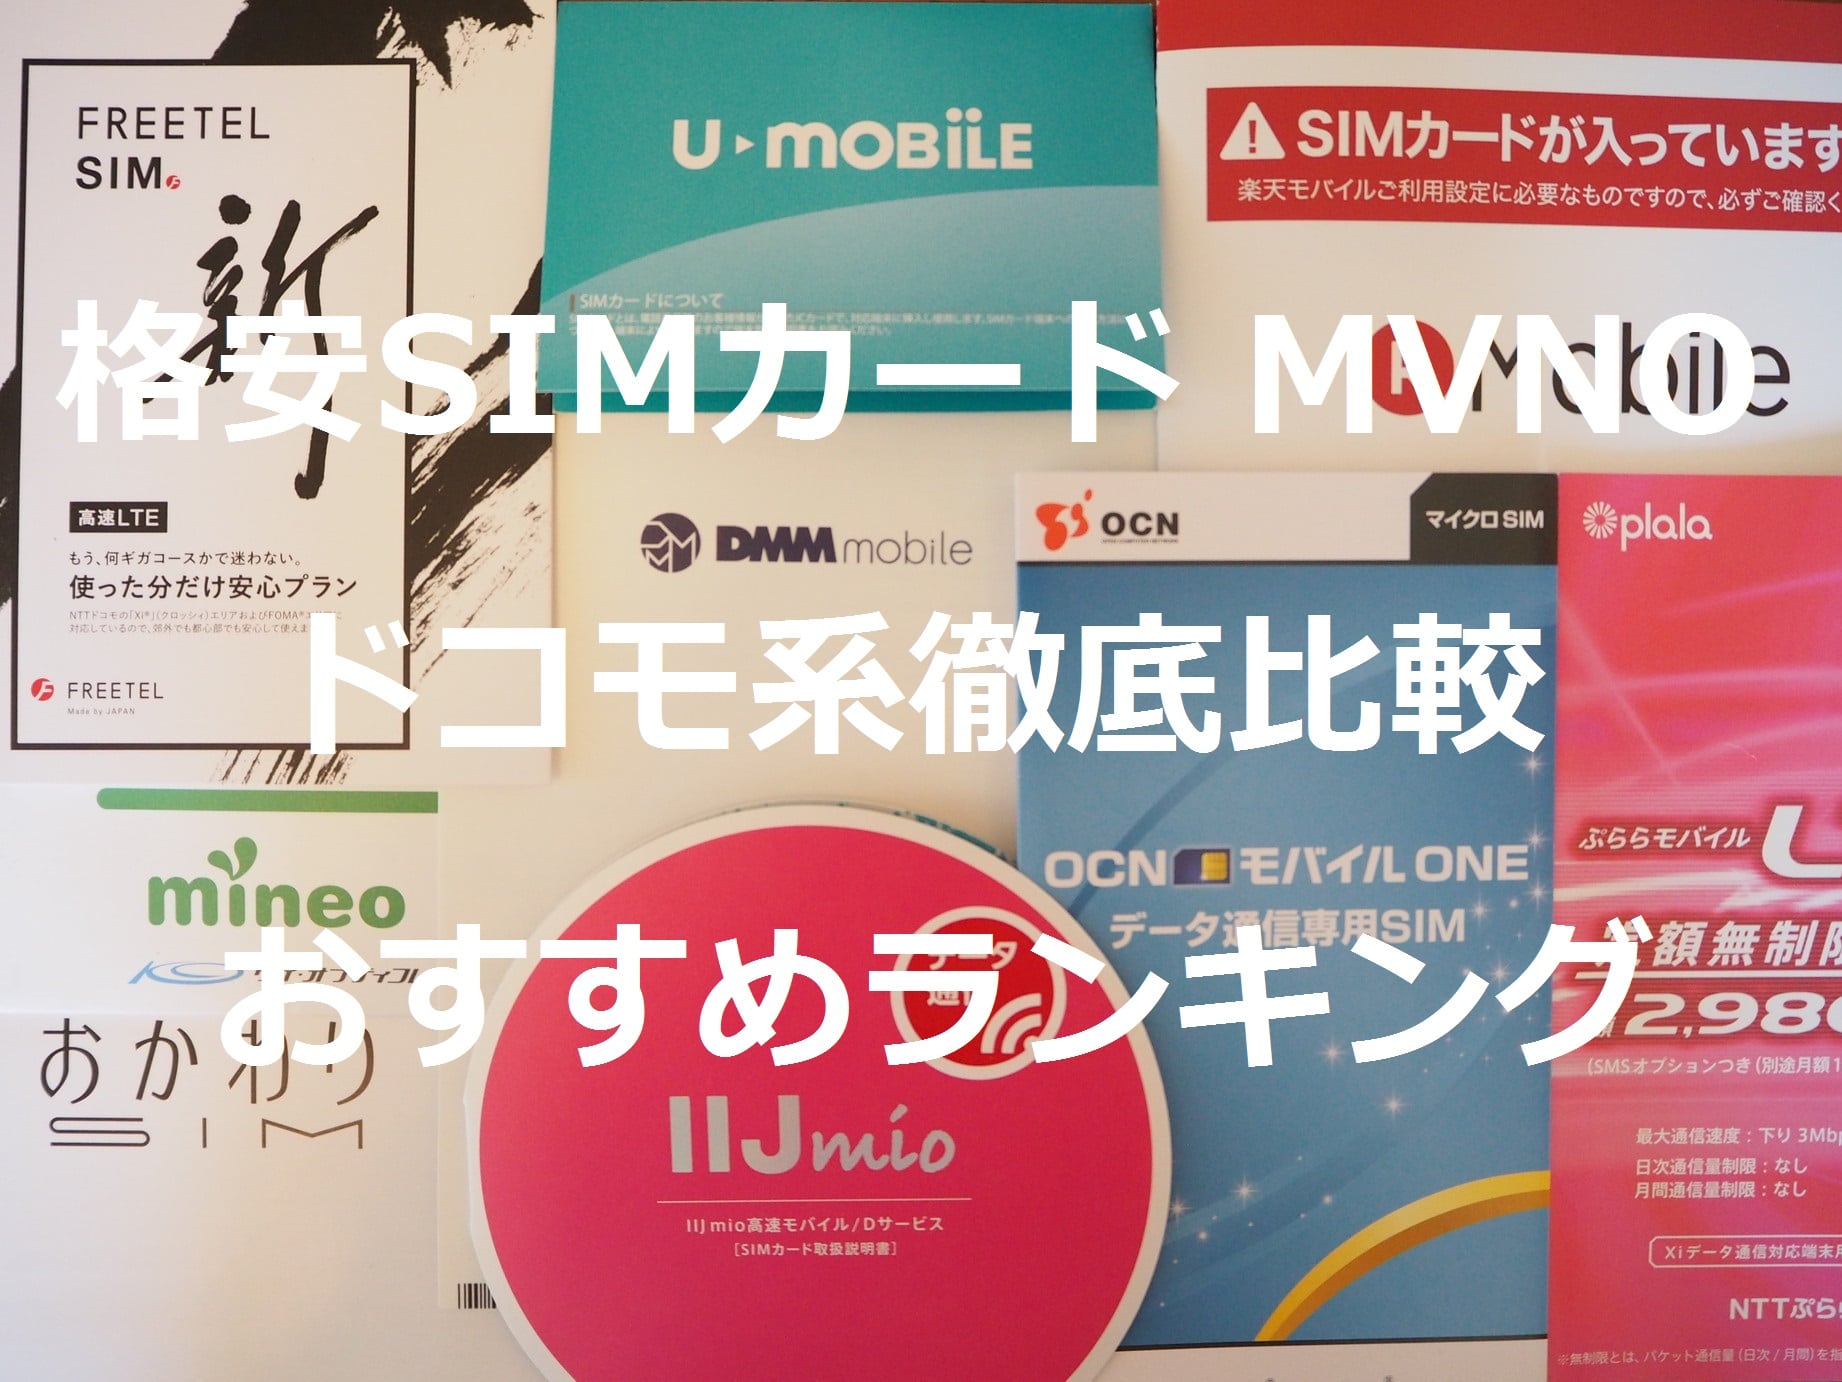 格安SIM MVNO ドコモ系比較とおすすめ7選【2018年9月17日】